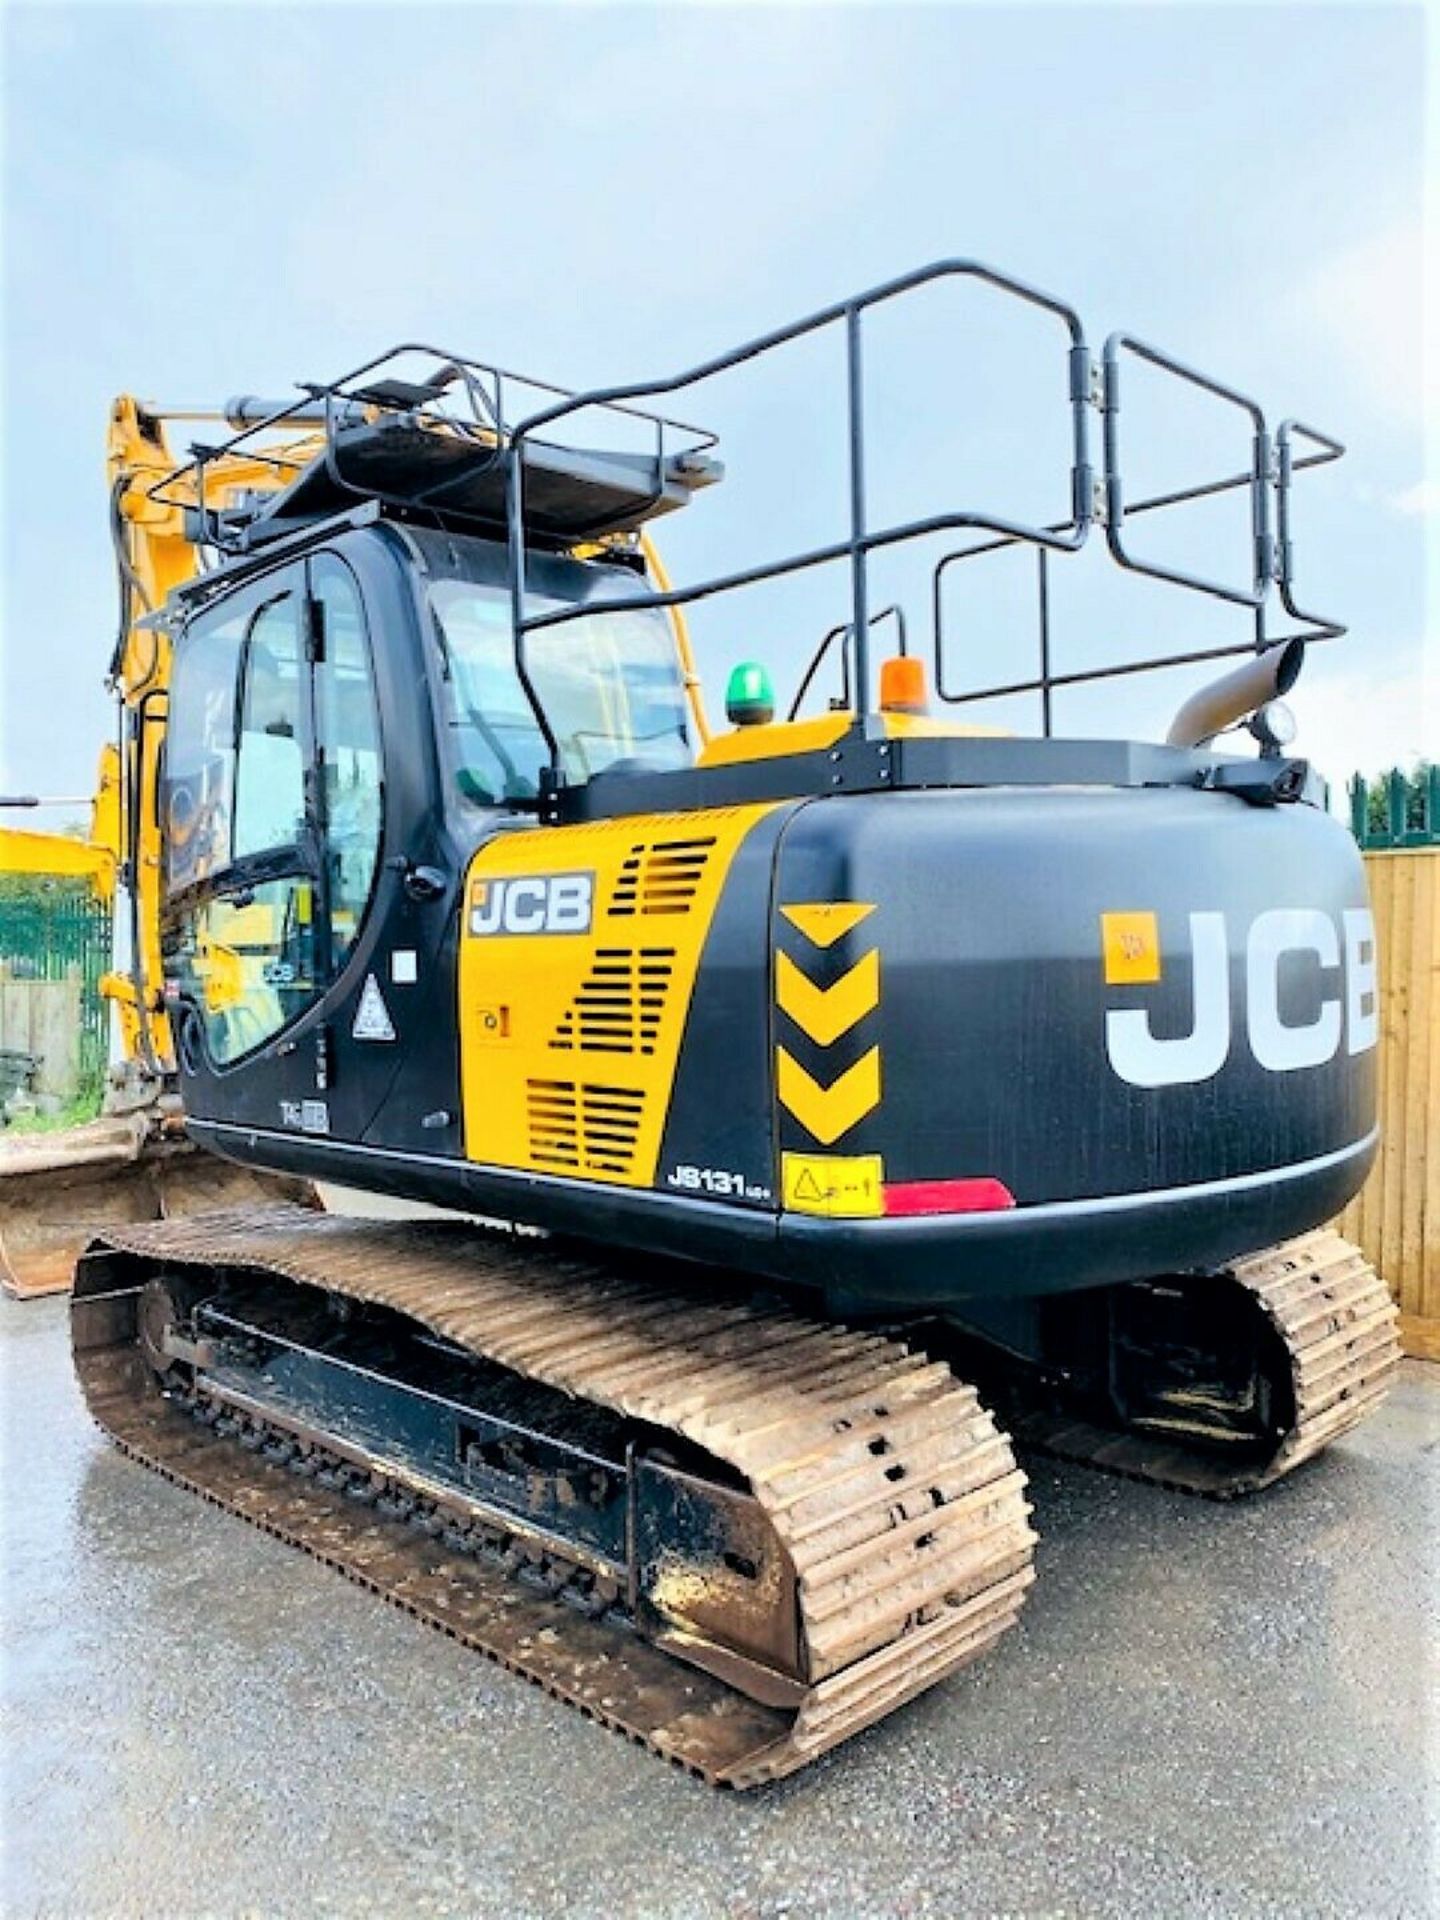 JCB JS131 LC Excavator / Digger (2018) - Image 6 of 12